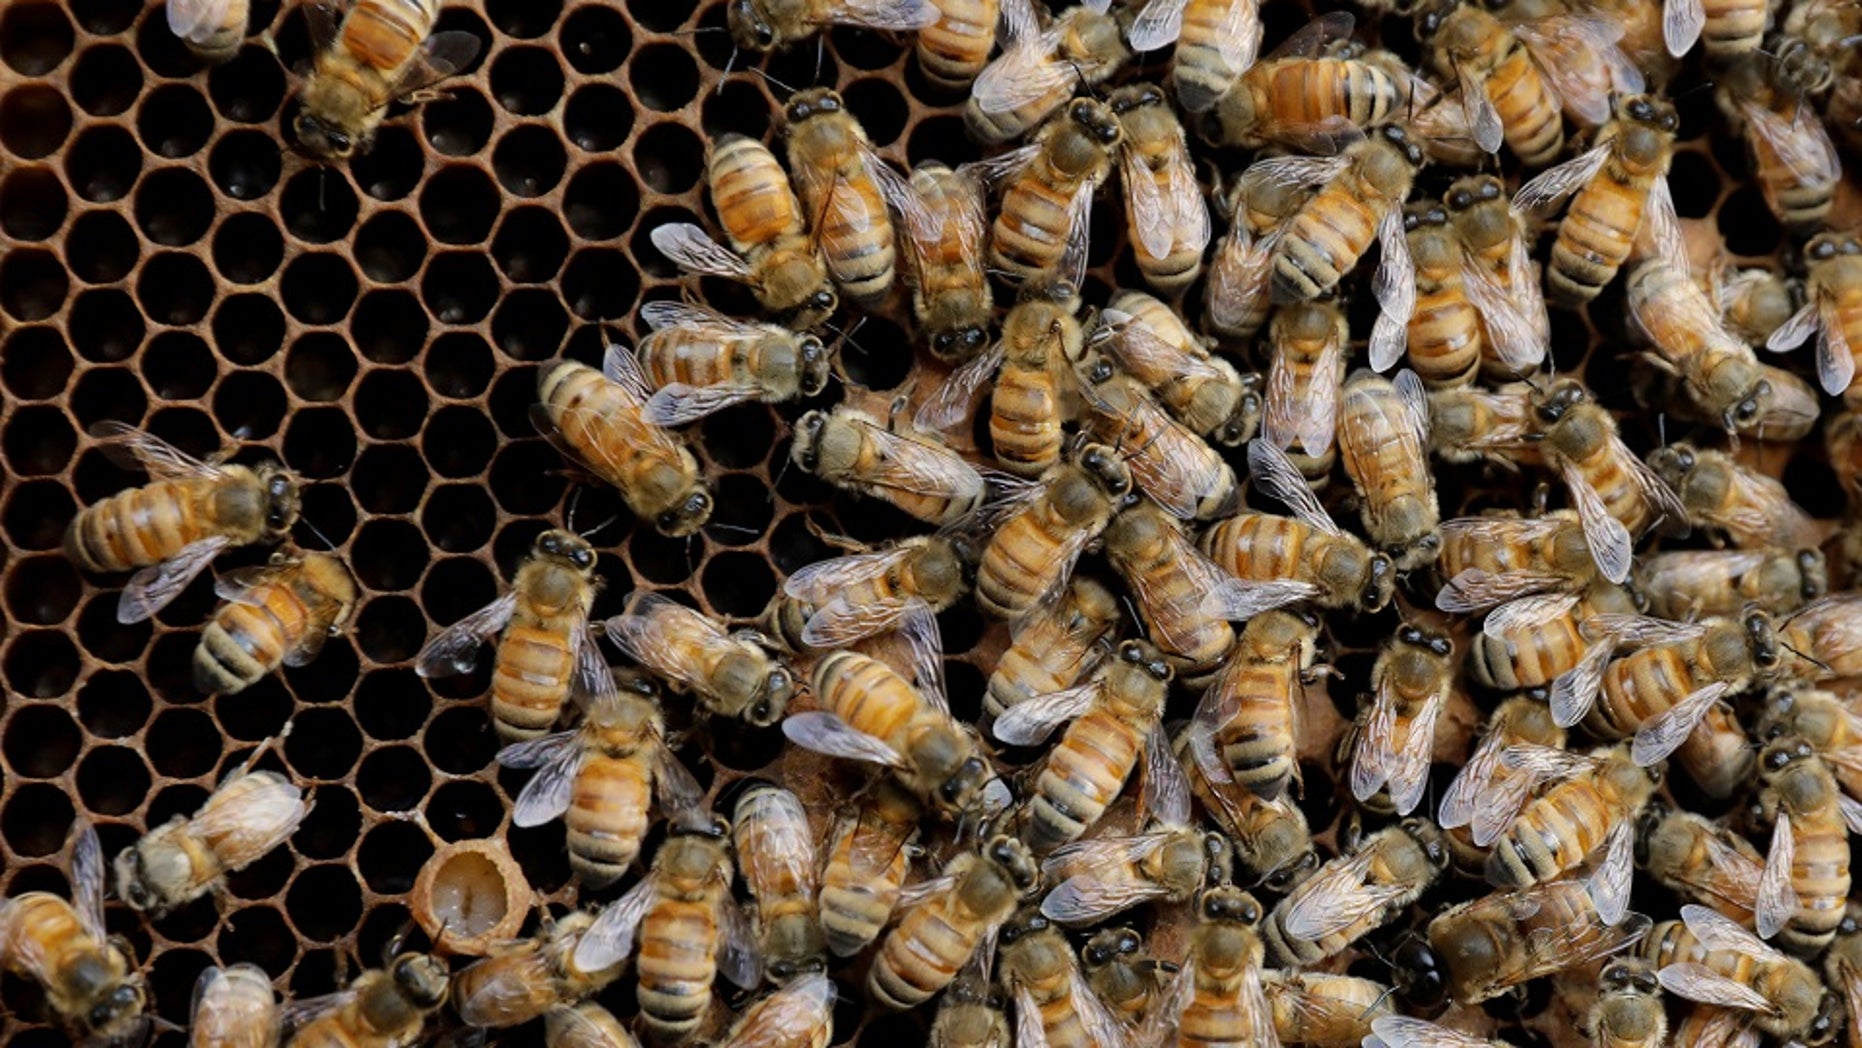 Million killer bees threaten Texas neighborhood: 'It was ...